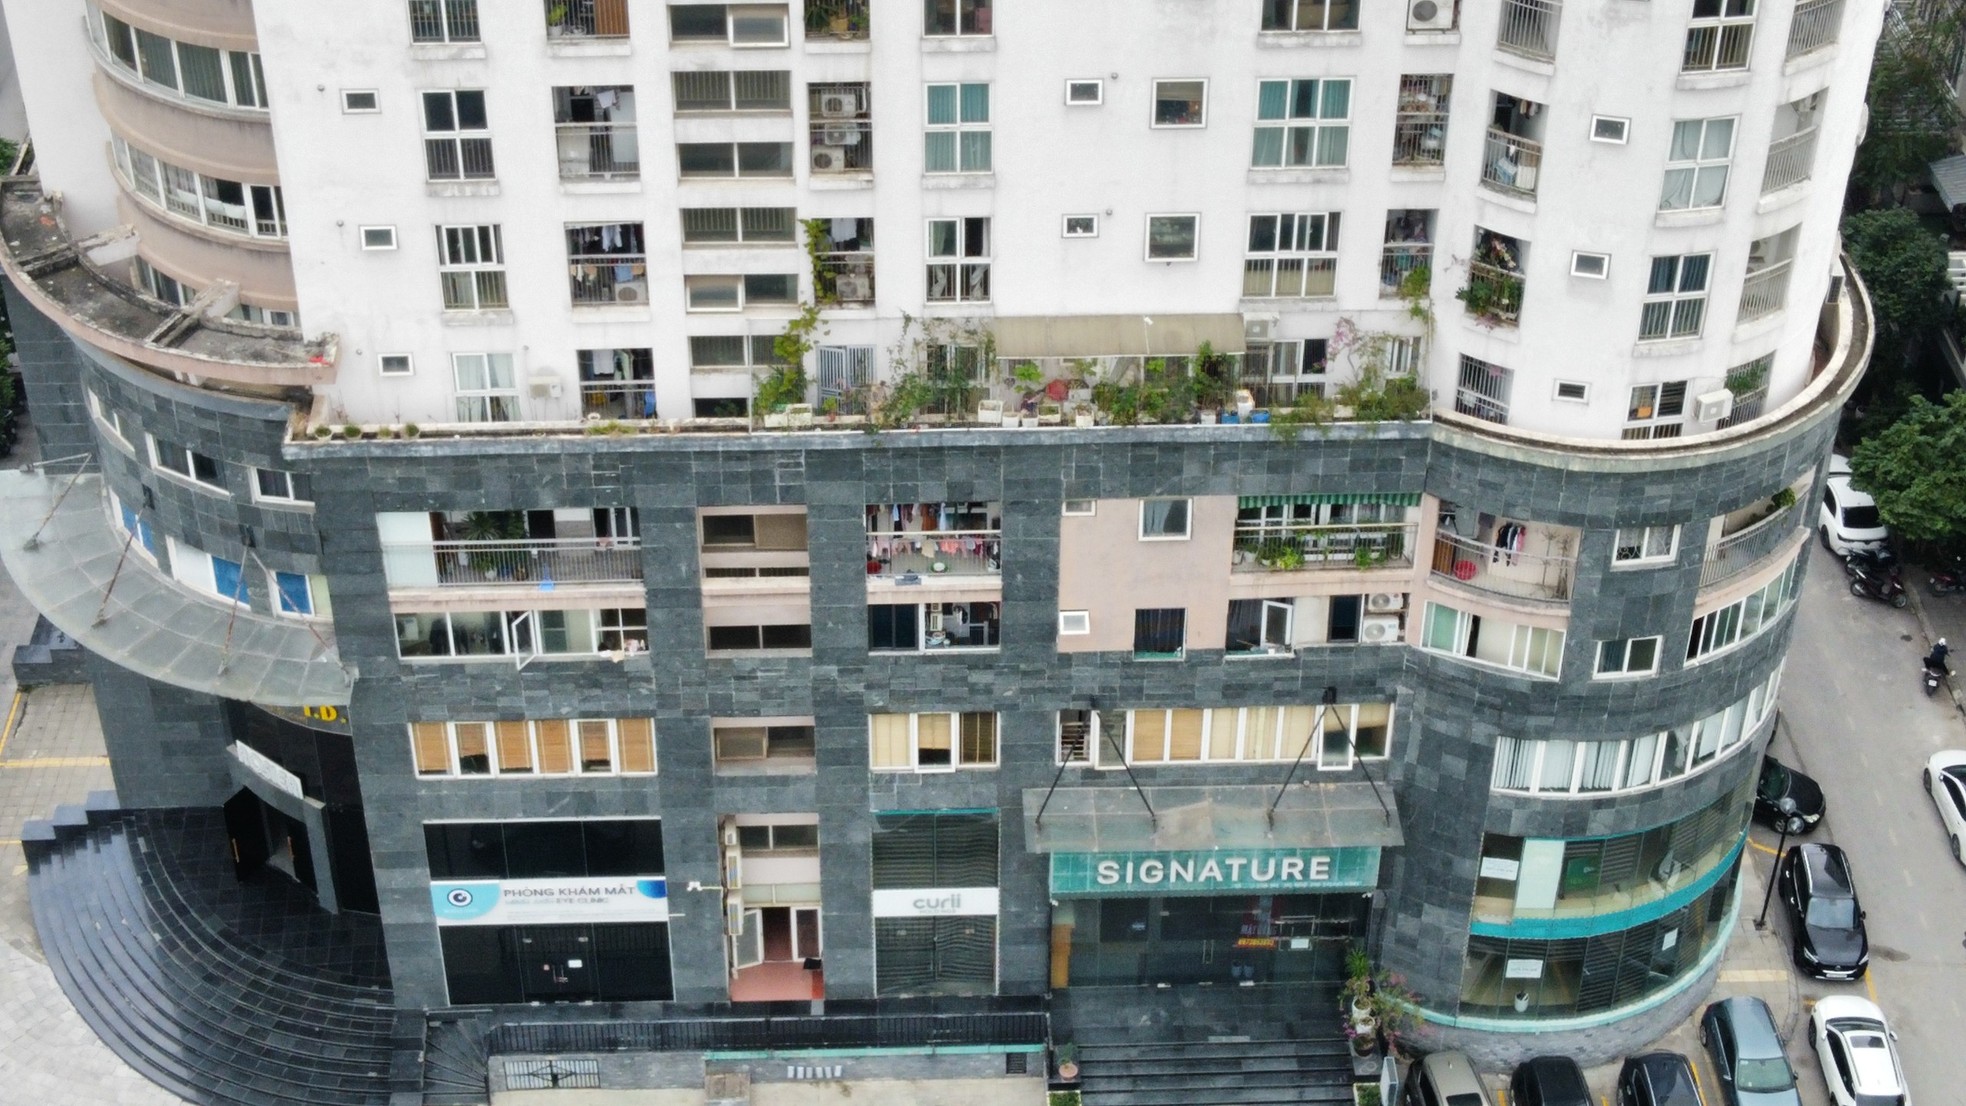 Hà Nội lên tiếng việc chậm xử lý chung cư biến tầng kỹ thuật thành căn hộ và văn phòng - Ảnh 6.